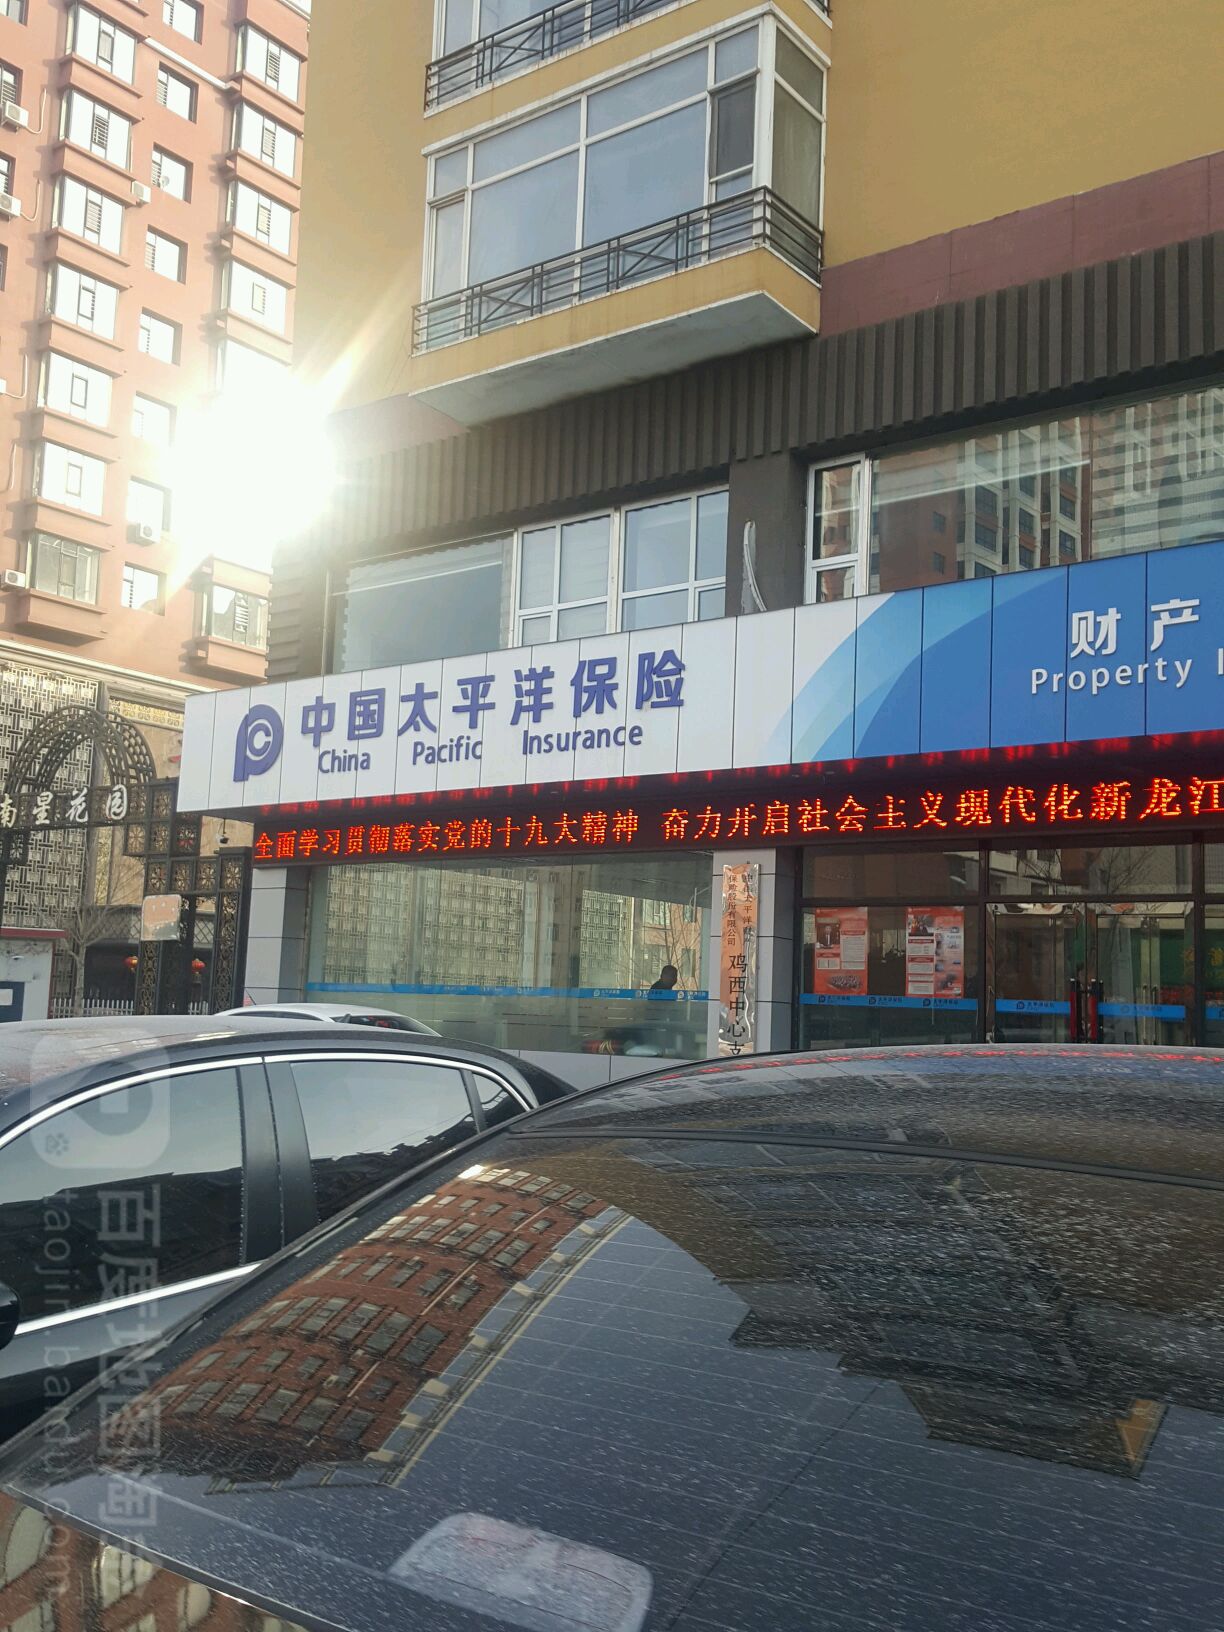 中国西太平洋保险(南星街店)